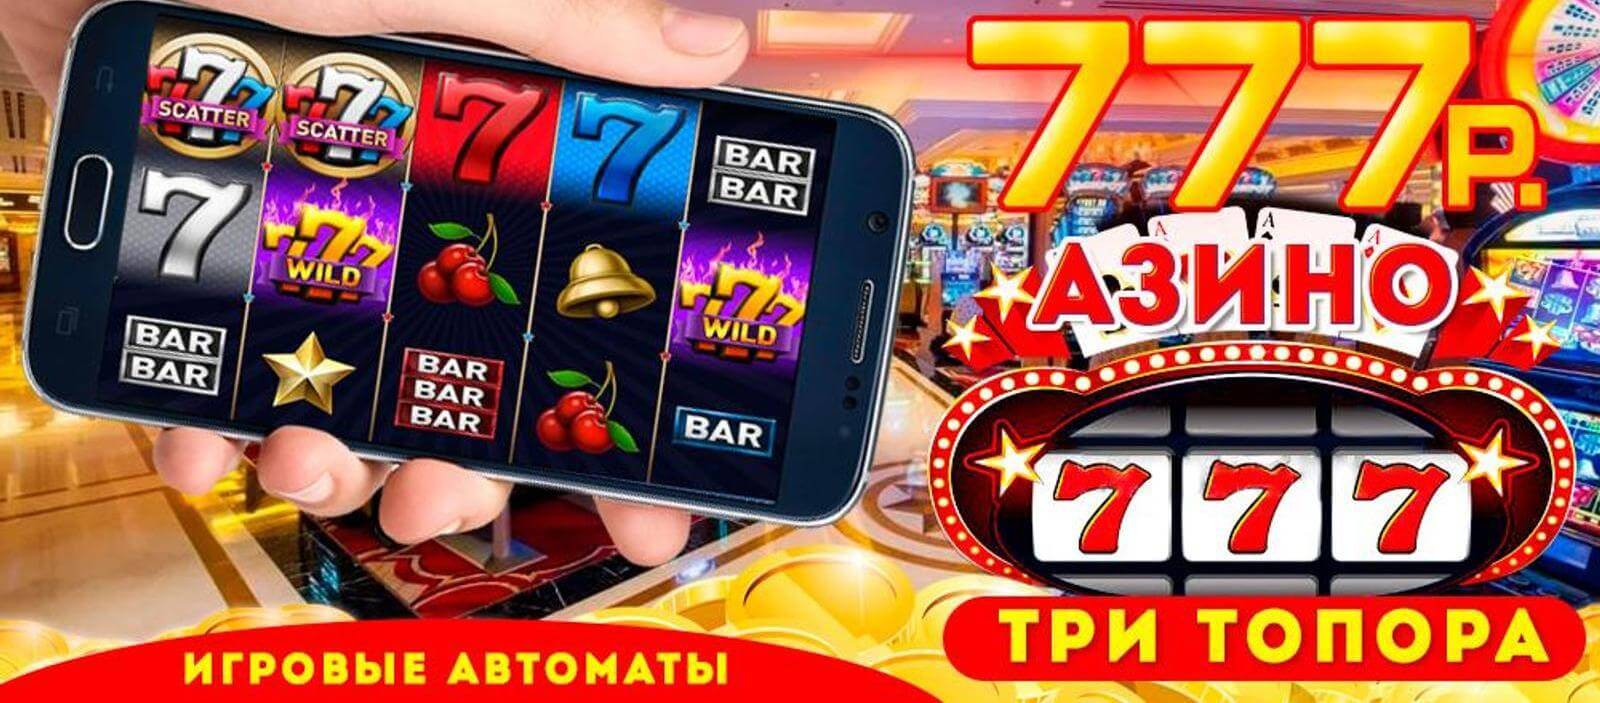 Отзывы о интернет казино 777 azino777 игровые автоматы скачать